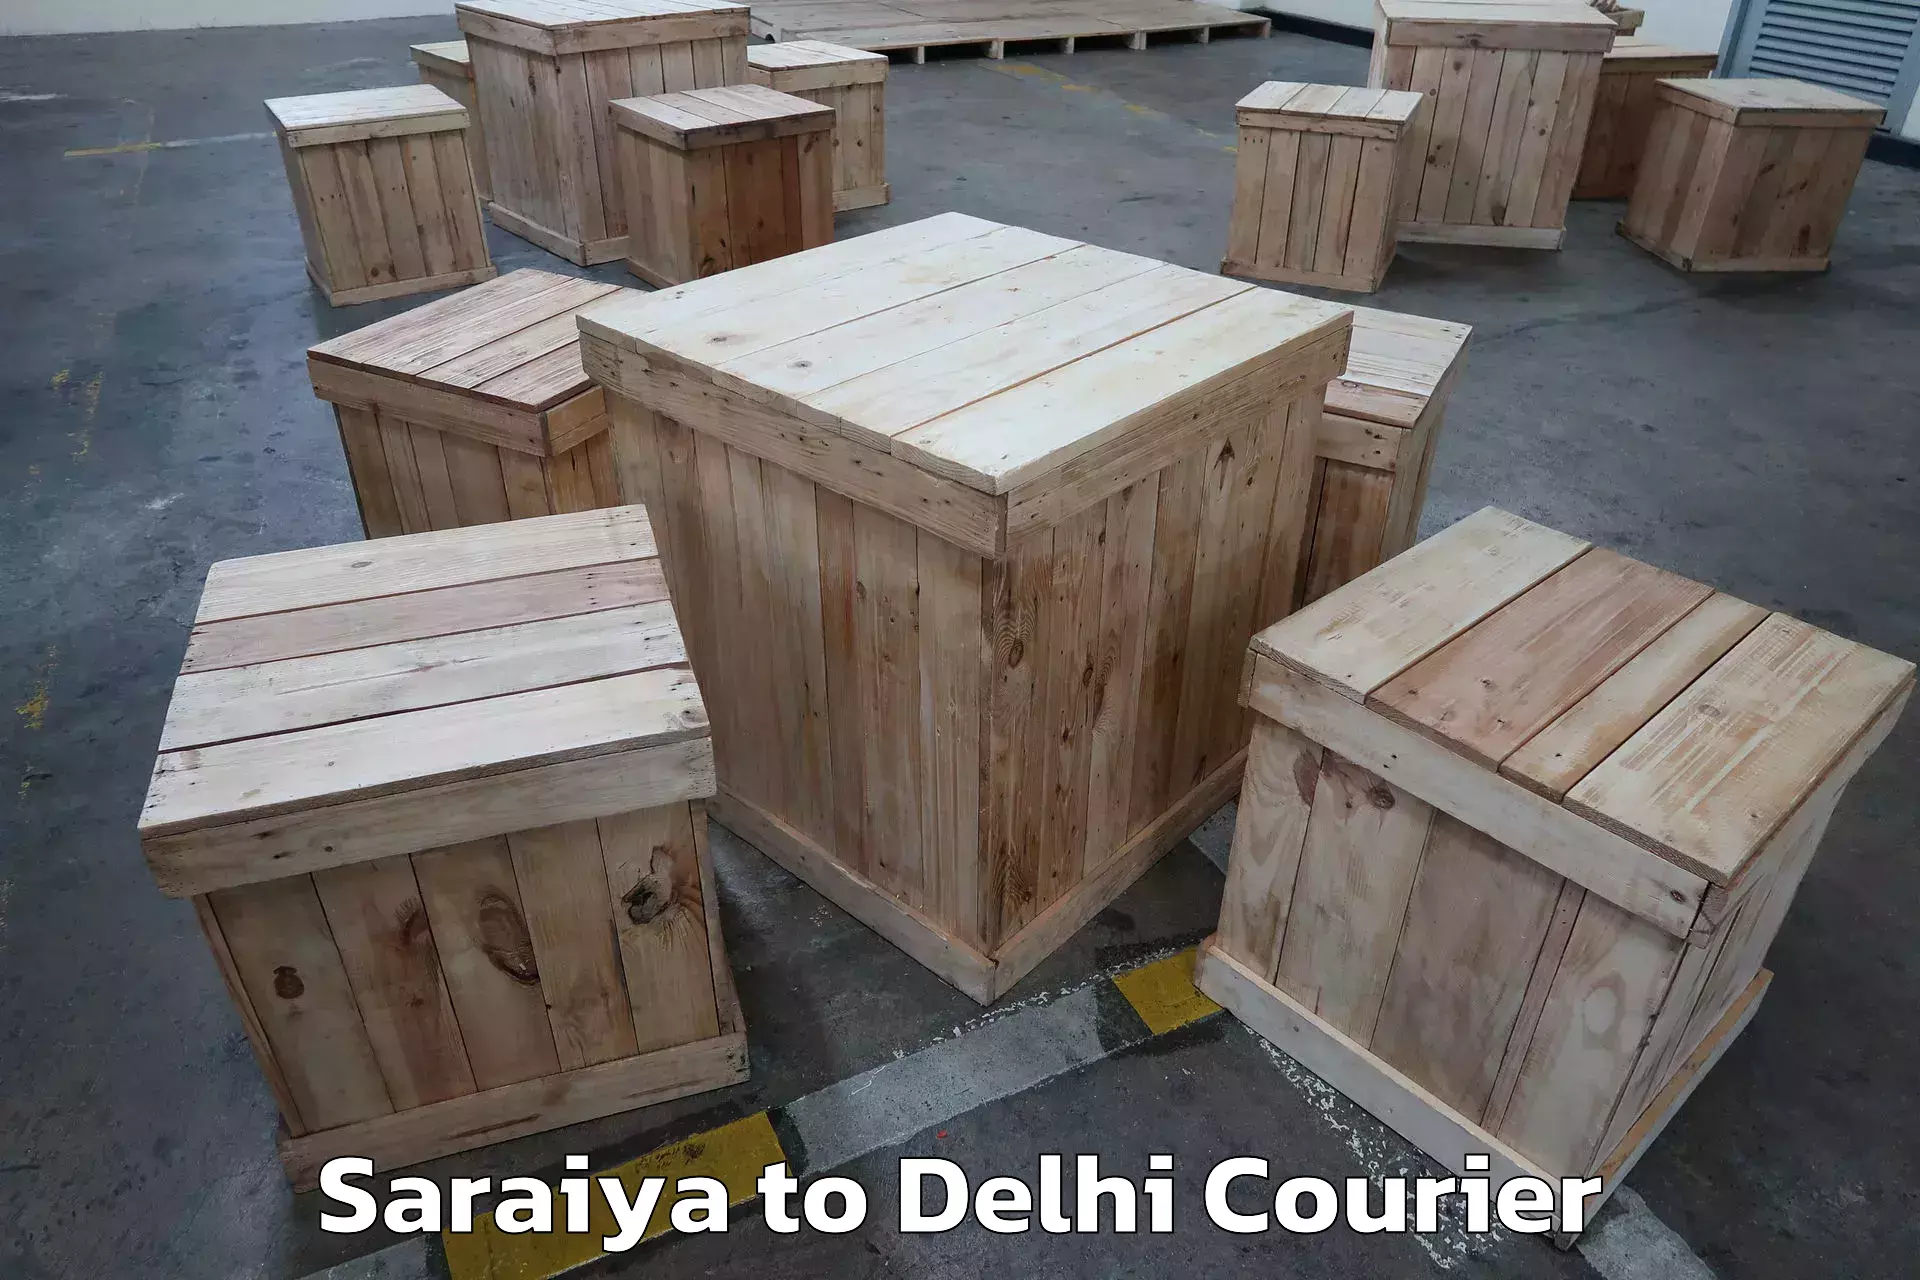 Efficient moving company Saraiya to Lodhi Road